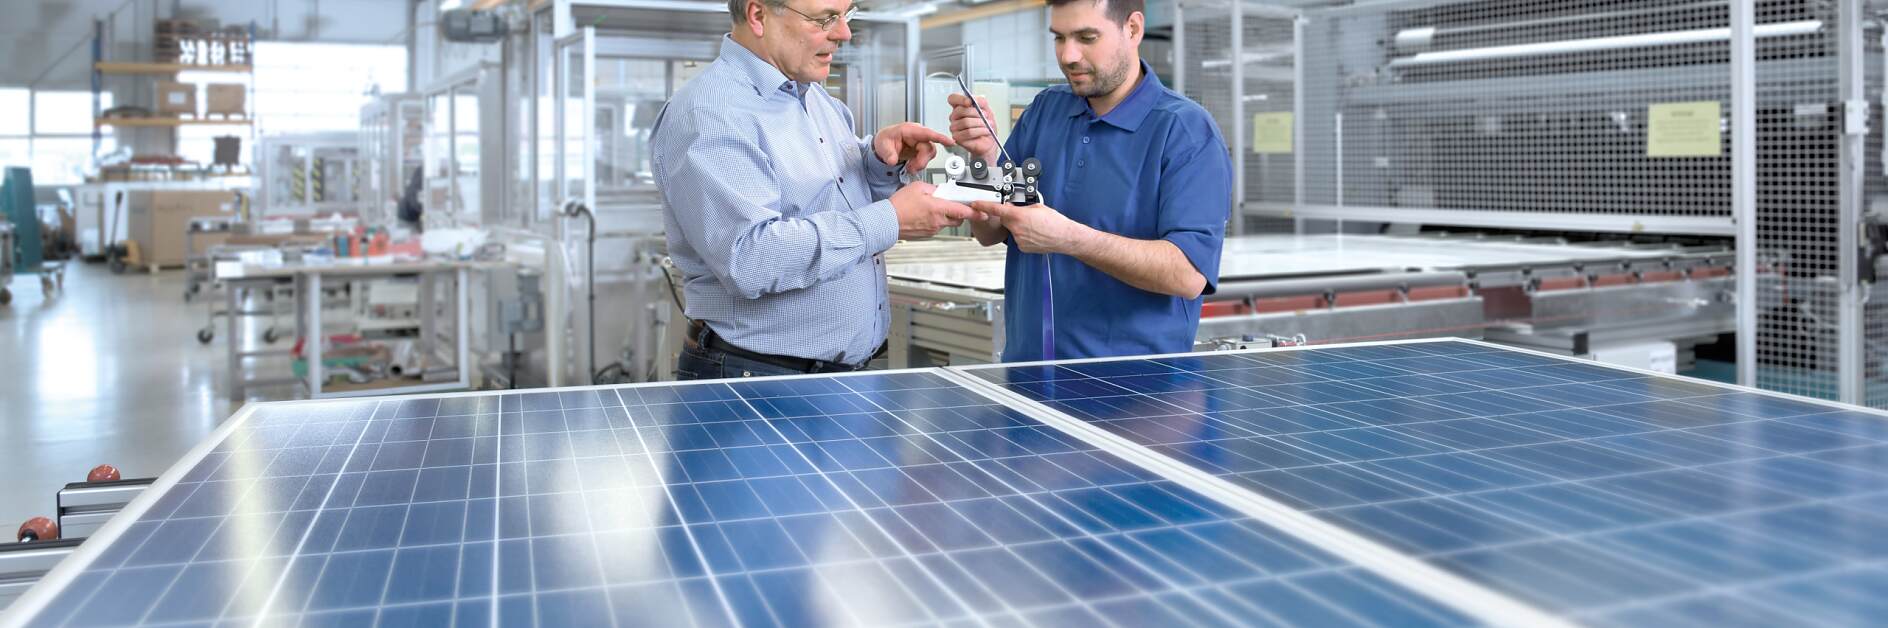 Solutions adhésives tesa pour l’industrie de l’énergie solaire